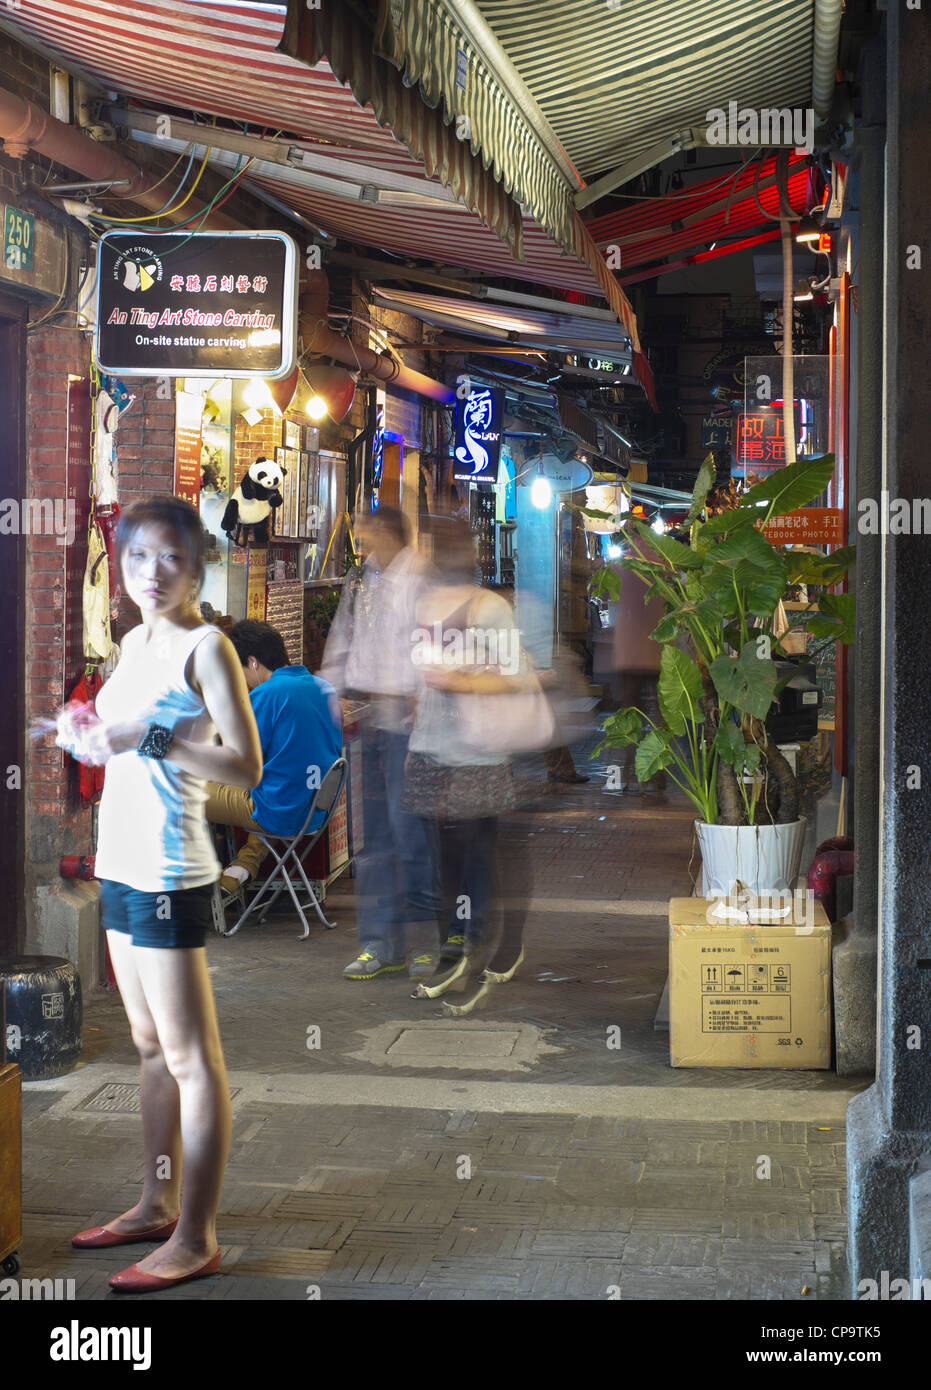 Nuit dans la région de Tianzifang entertainment et commerçant sur Taikang Road à Shanghai Chine Banque D'Images